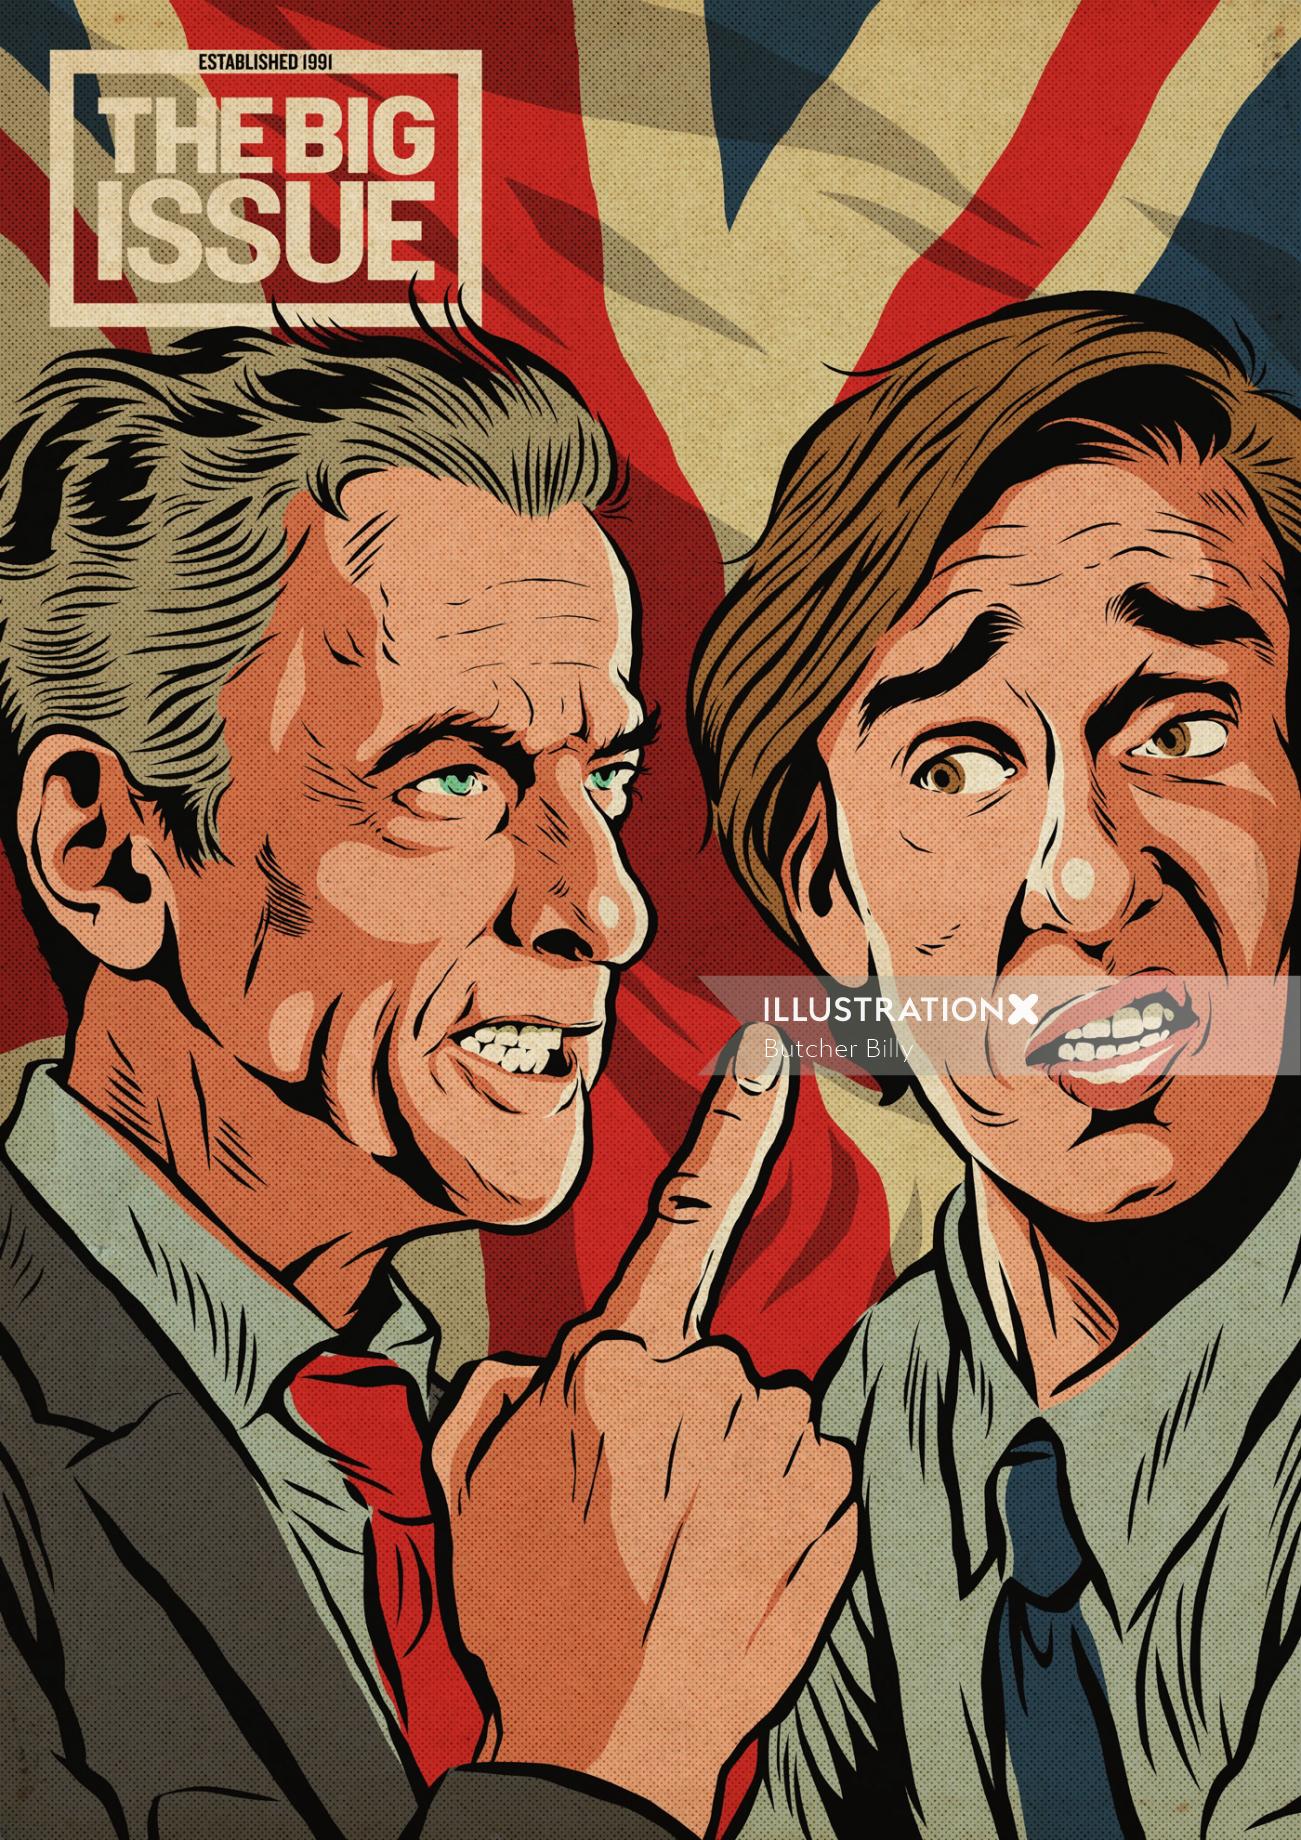 Ilustración de portada de Peter Capaldi y Steve Coogan para la revista The Big Issue